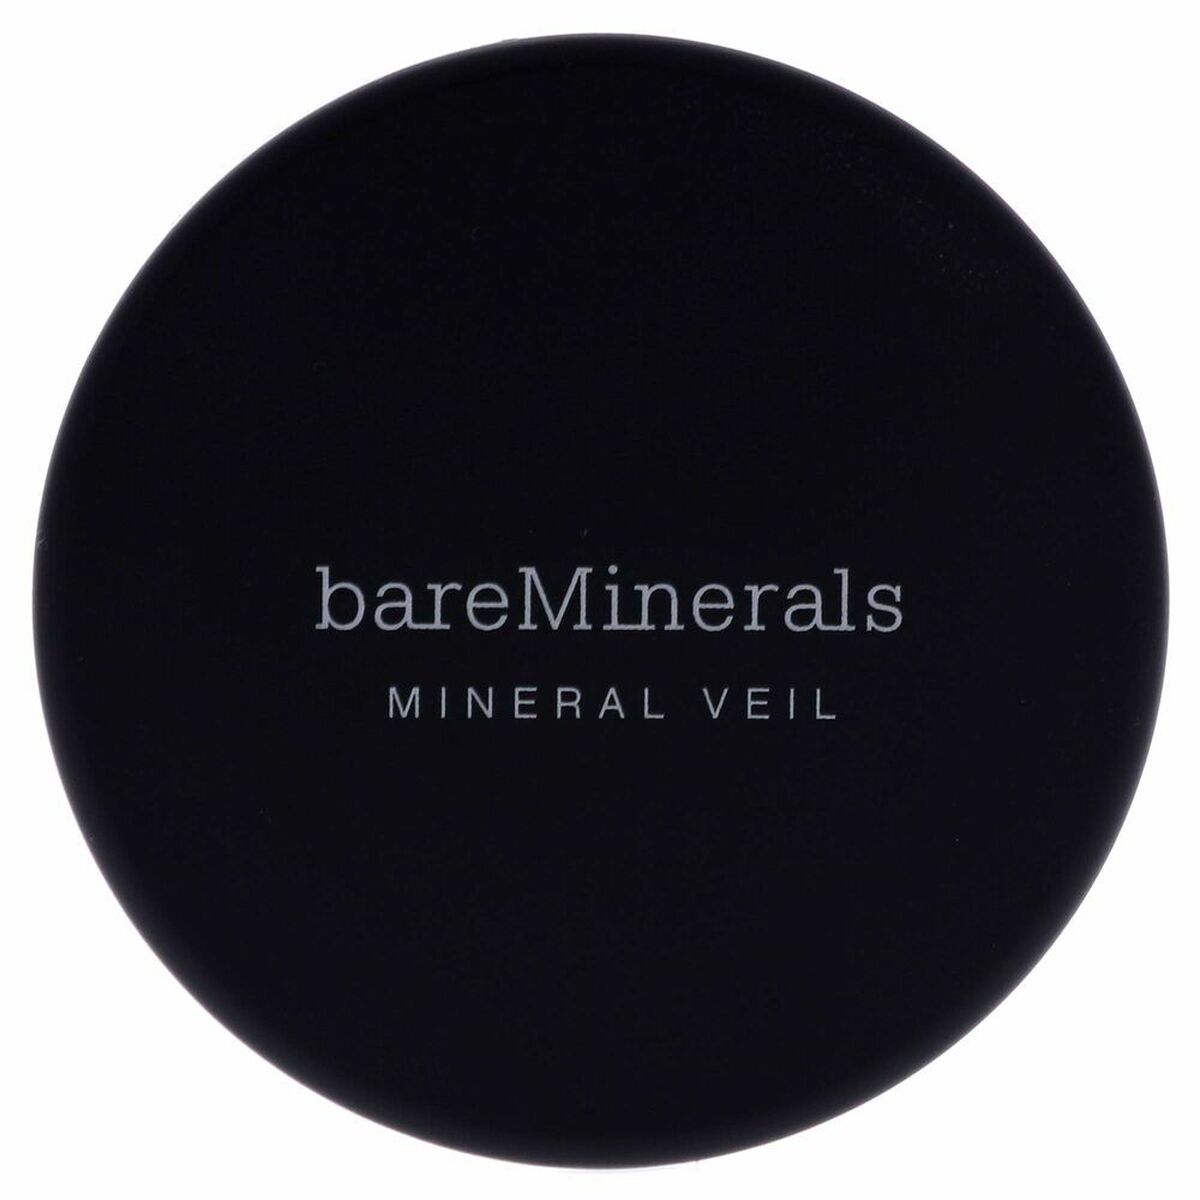 Polvos Sueltos bareMinerals Mineral Veil Iluminador Spf 15 9 g